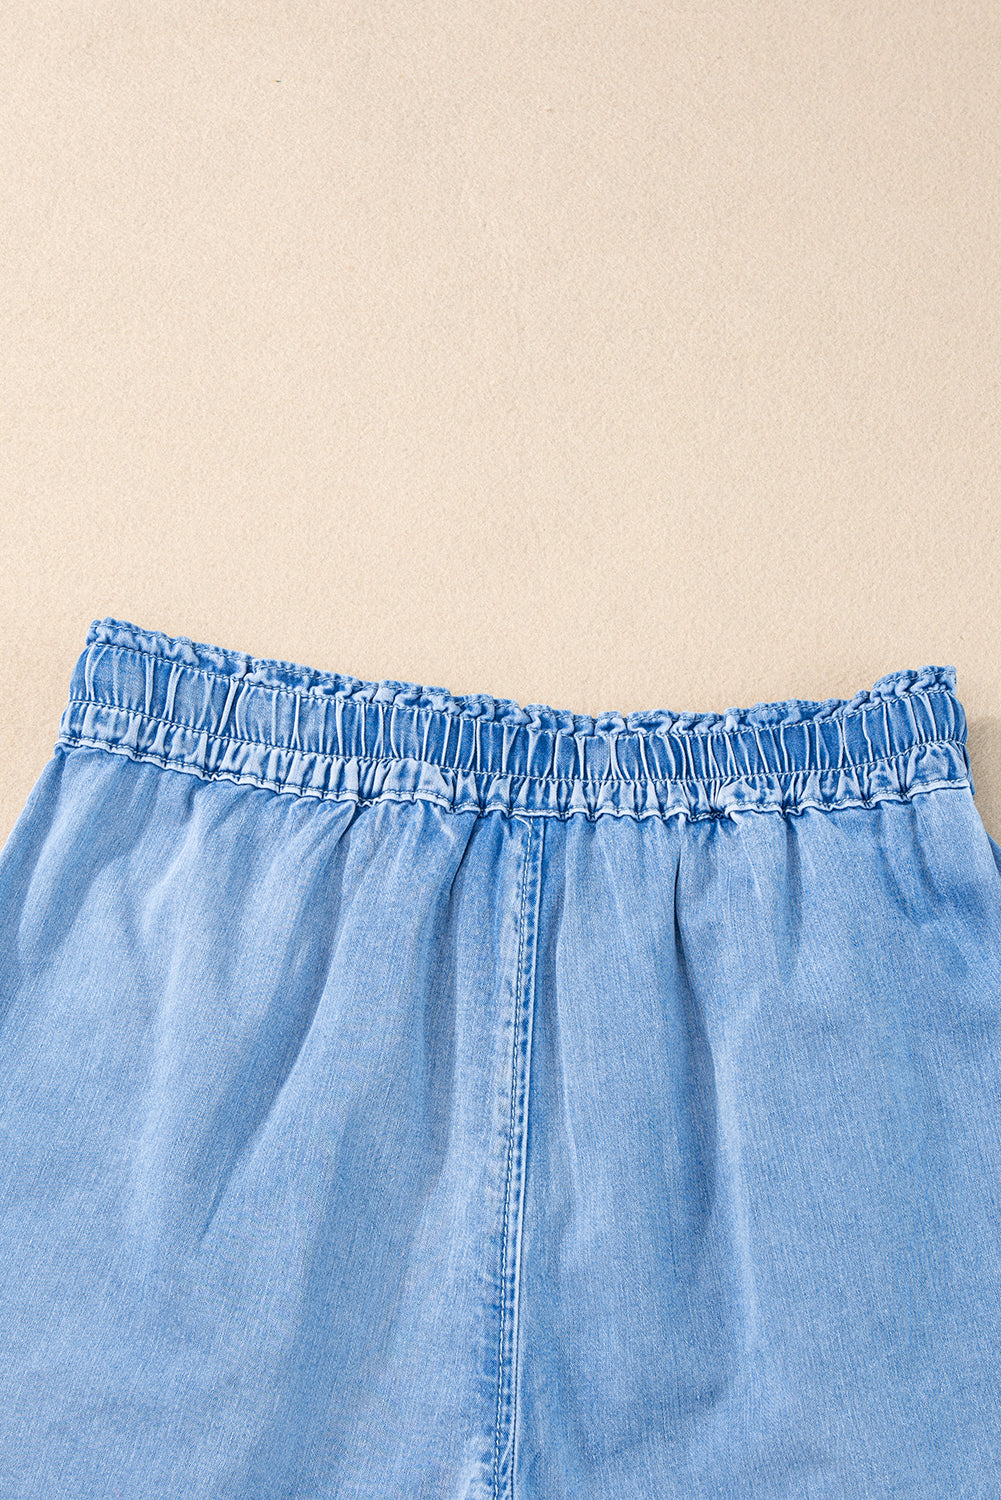 Beau Blue Casual Chambray Drawstring Shorts